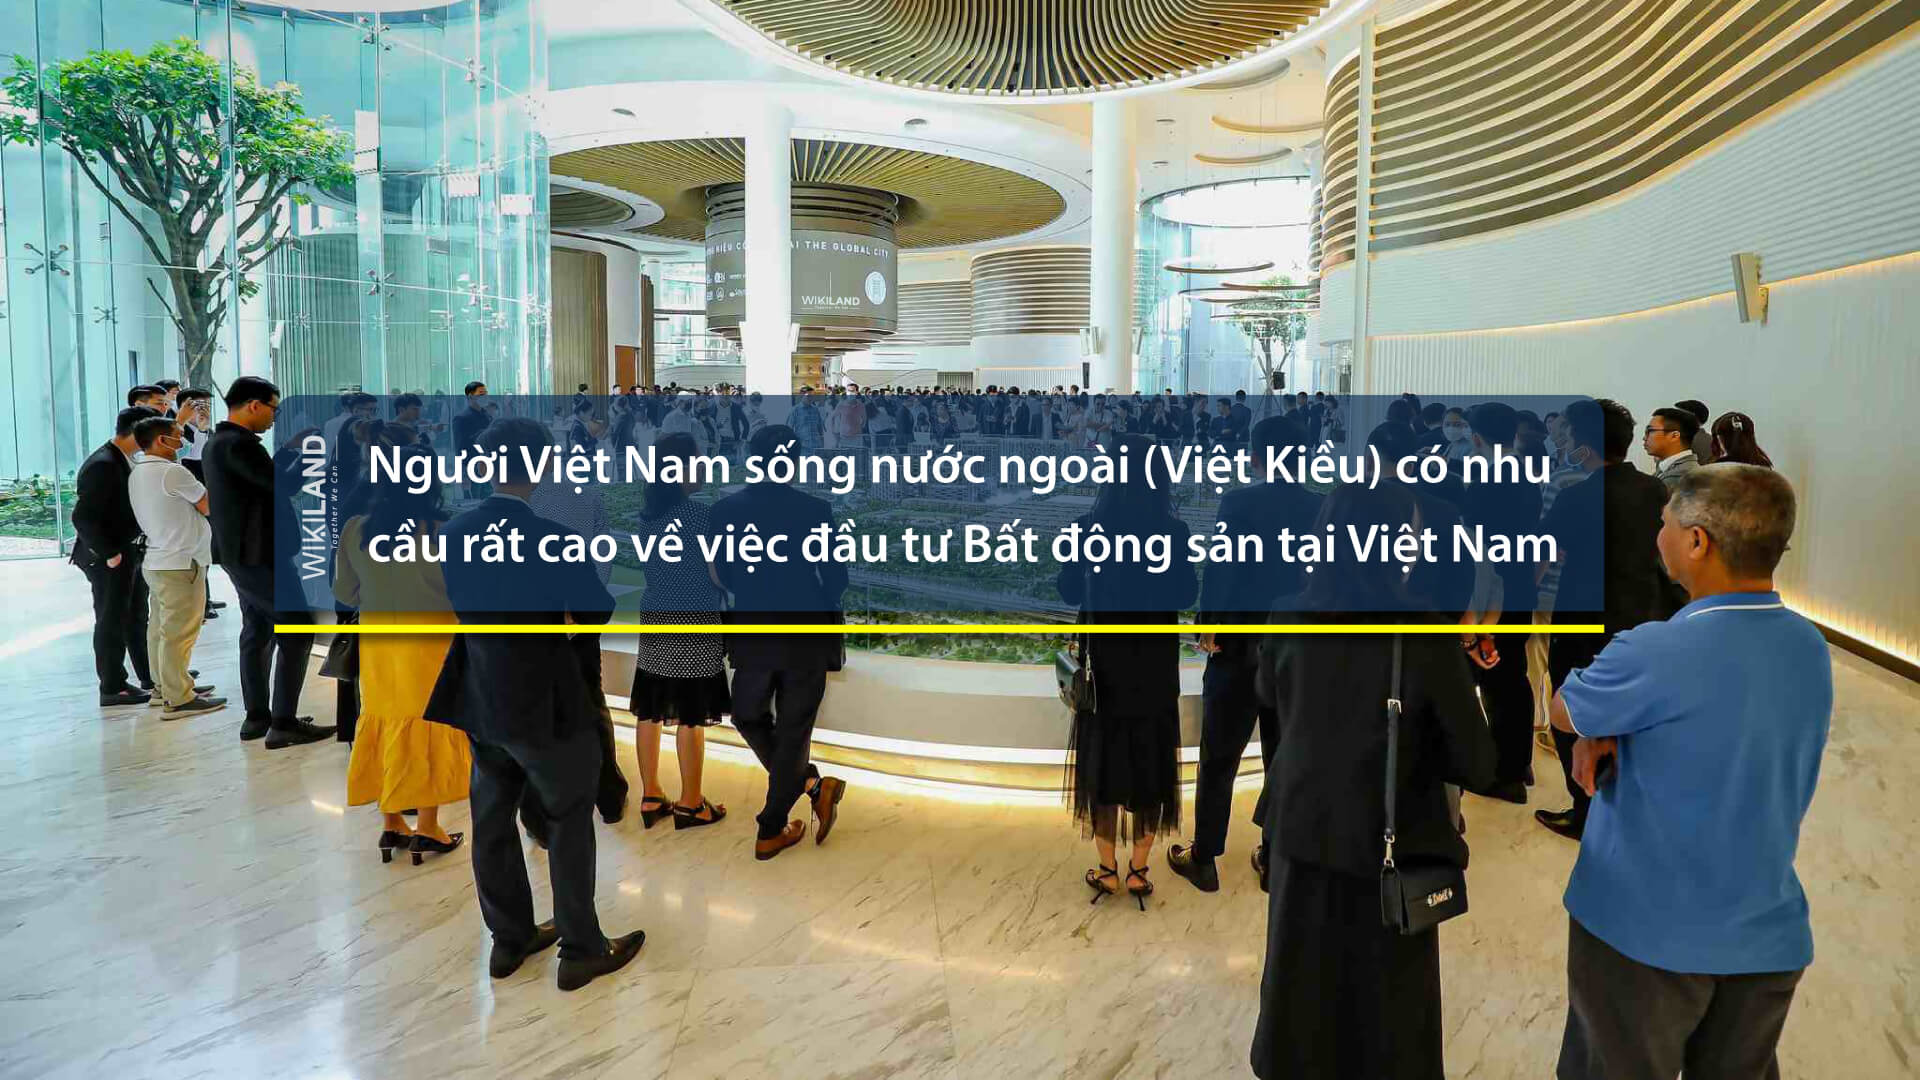 Việt kiều có nhu cầu rất cao về việc đầu tư bất động sản tại việt nam